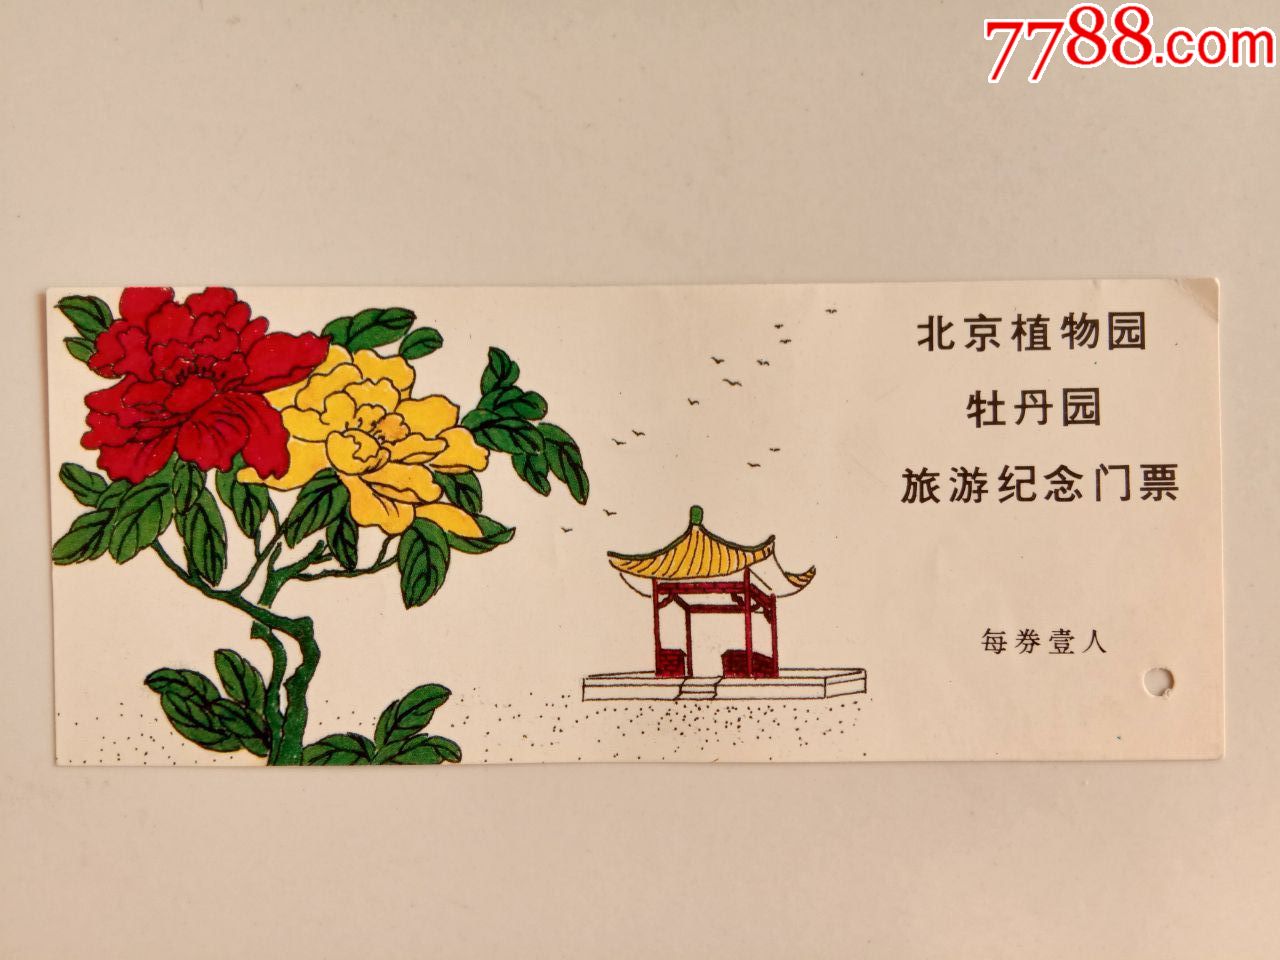 北京植物园牡丹园旅游纪念门票